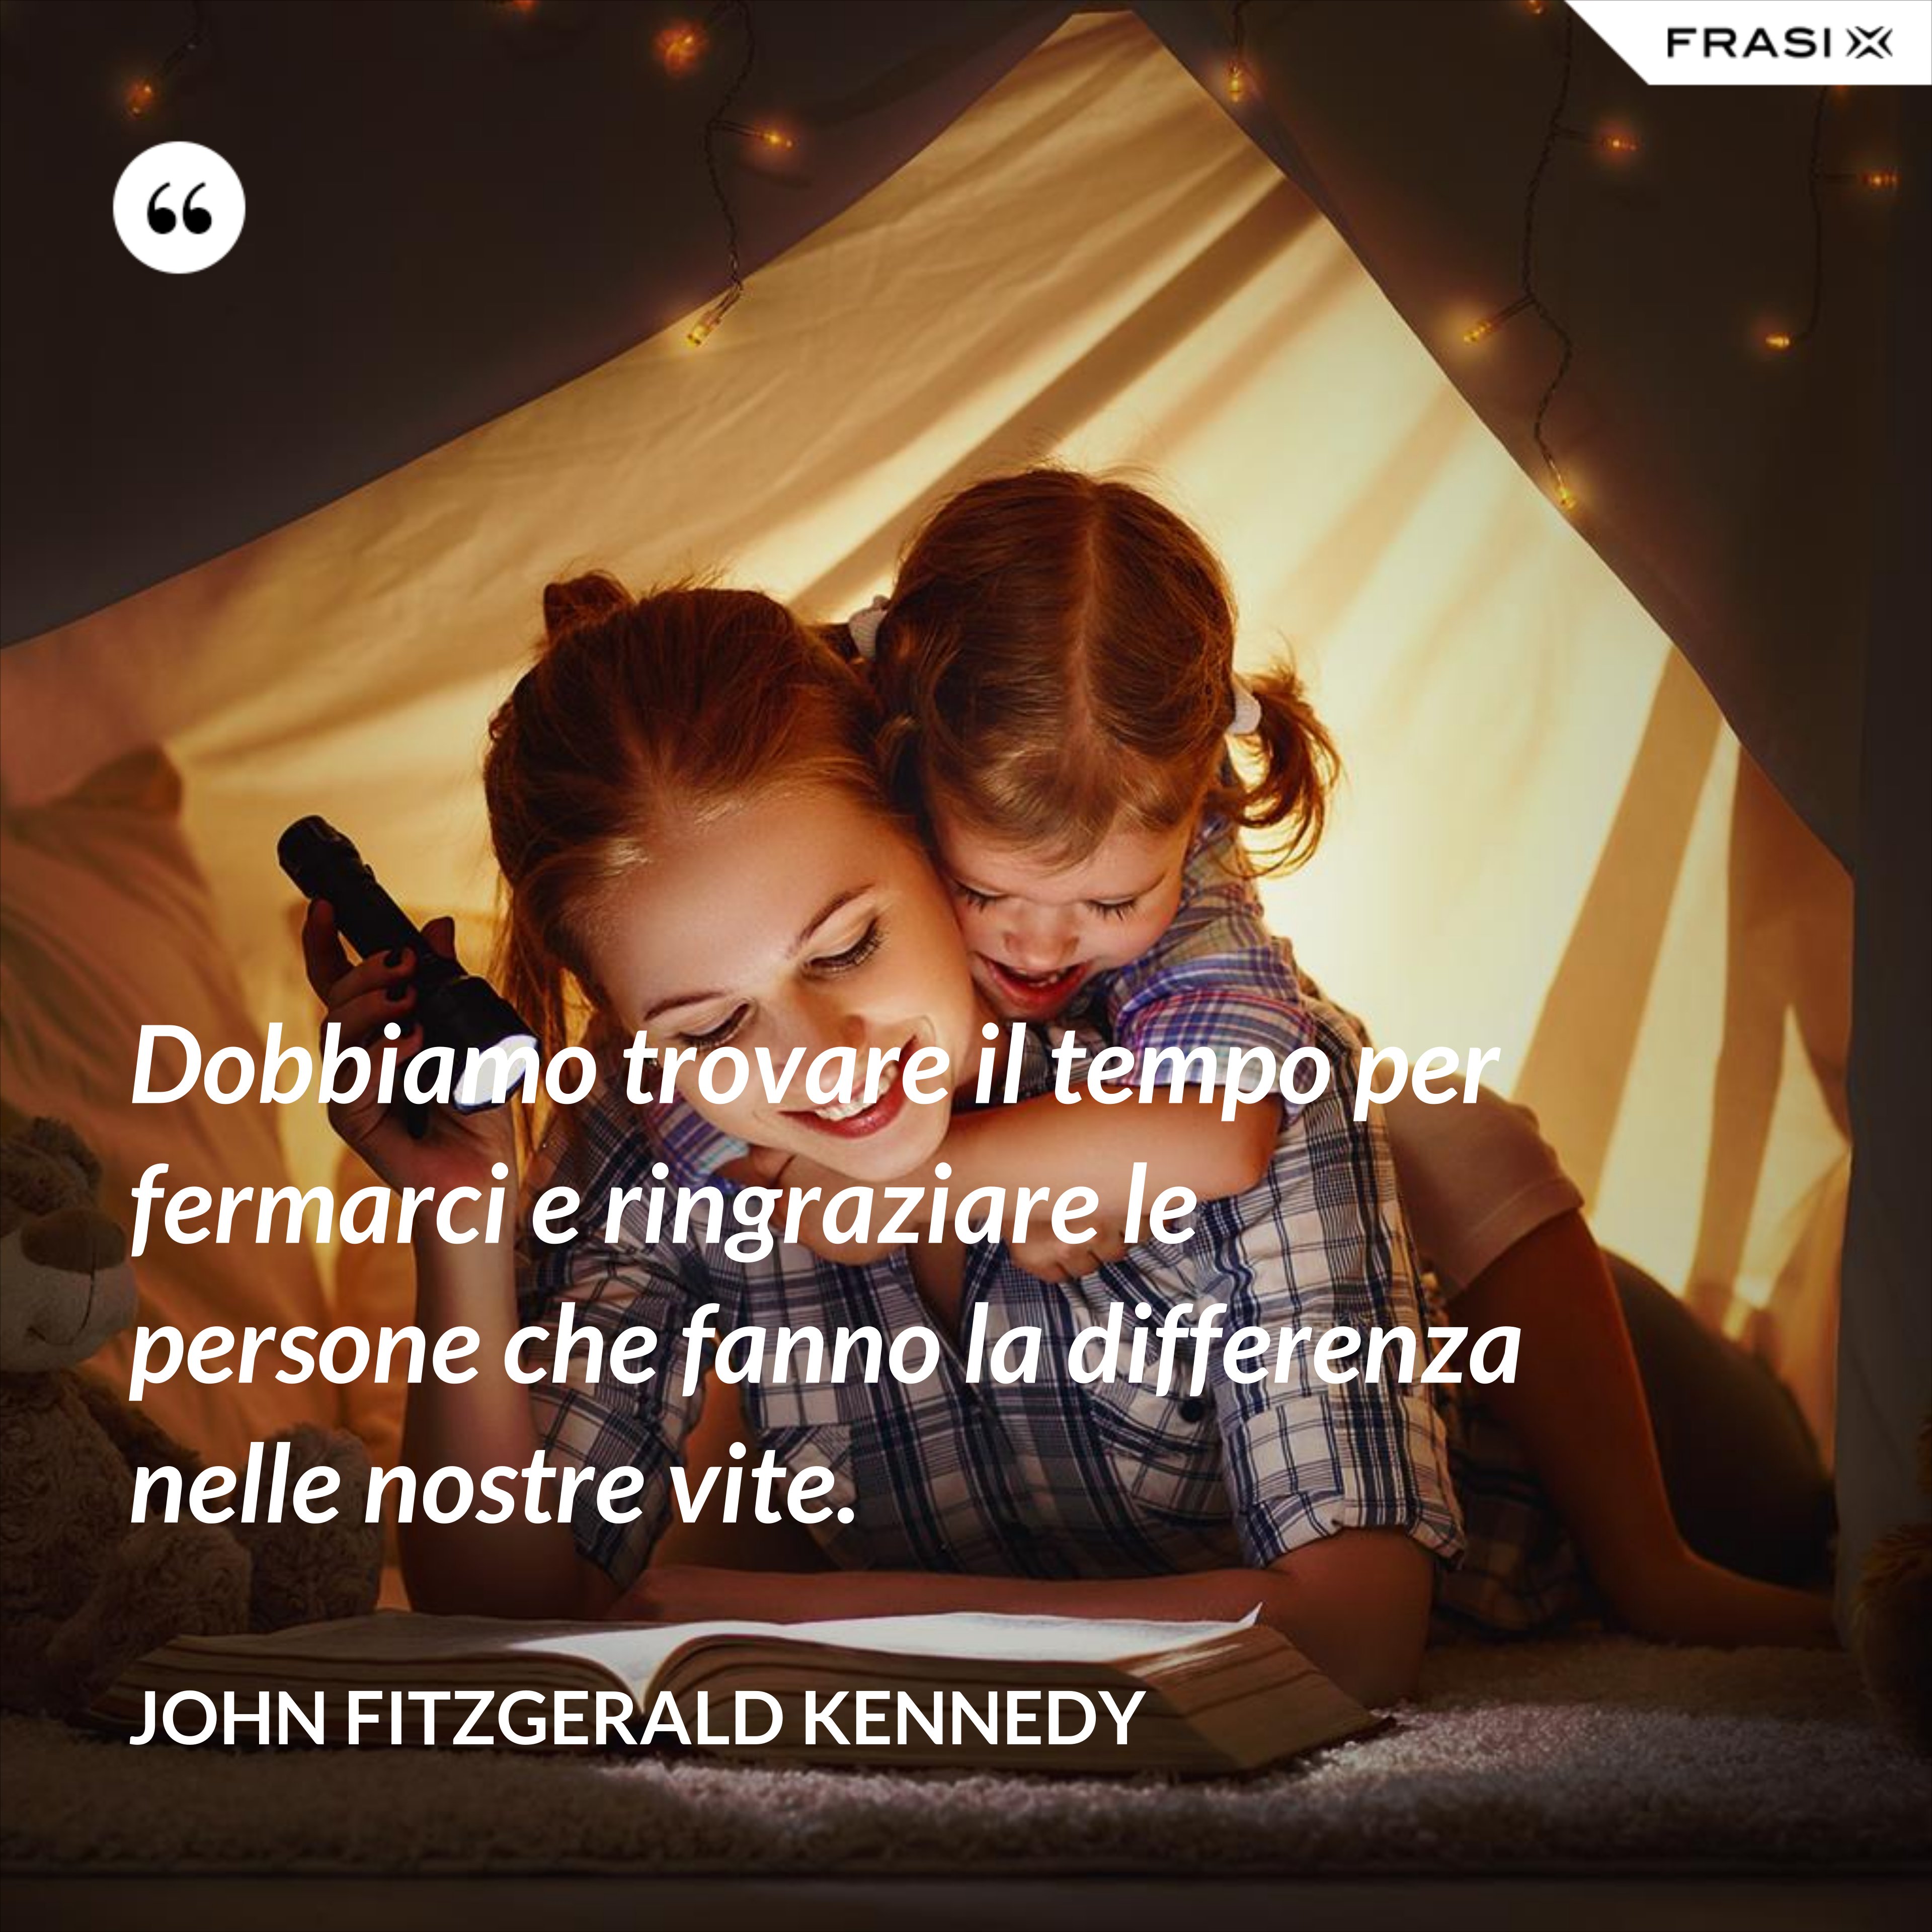 Dobbiamo trovare il tempo per fermarci e ringraziare le persone che fanno la differenza nelle nostre vite. - John Fitzgerald Kennedy